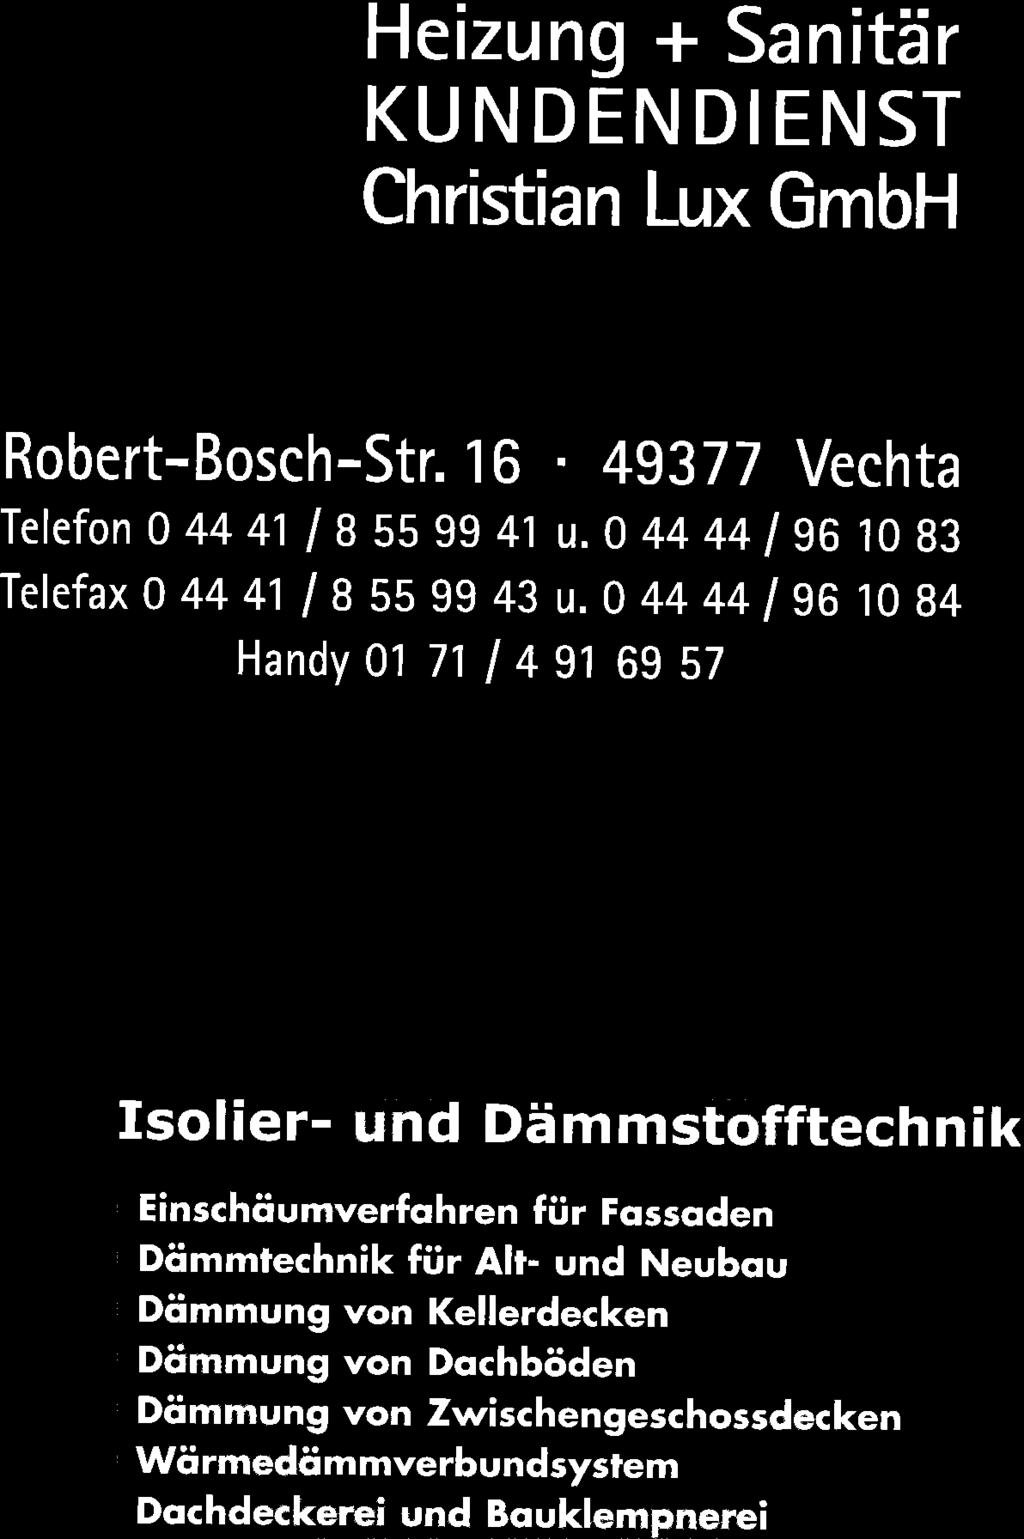 Heizung + Sanitär KUNDENDIENST Christian Lux GmbH Robert-Bosch-Str. 16. 49371 Vechta Telefon 0 44 41/ g SS 9941 u.0 44 44 I ga 1083 Telefax 0 44 41/ e SS 9943 u.